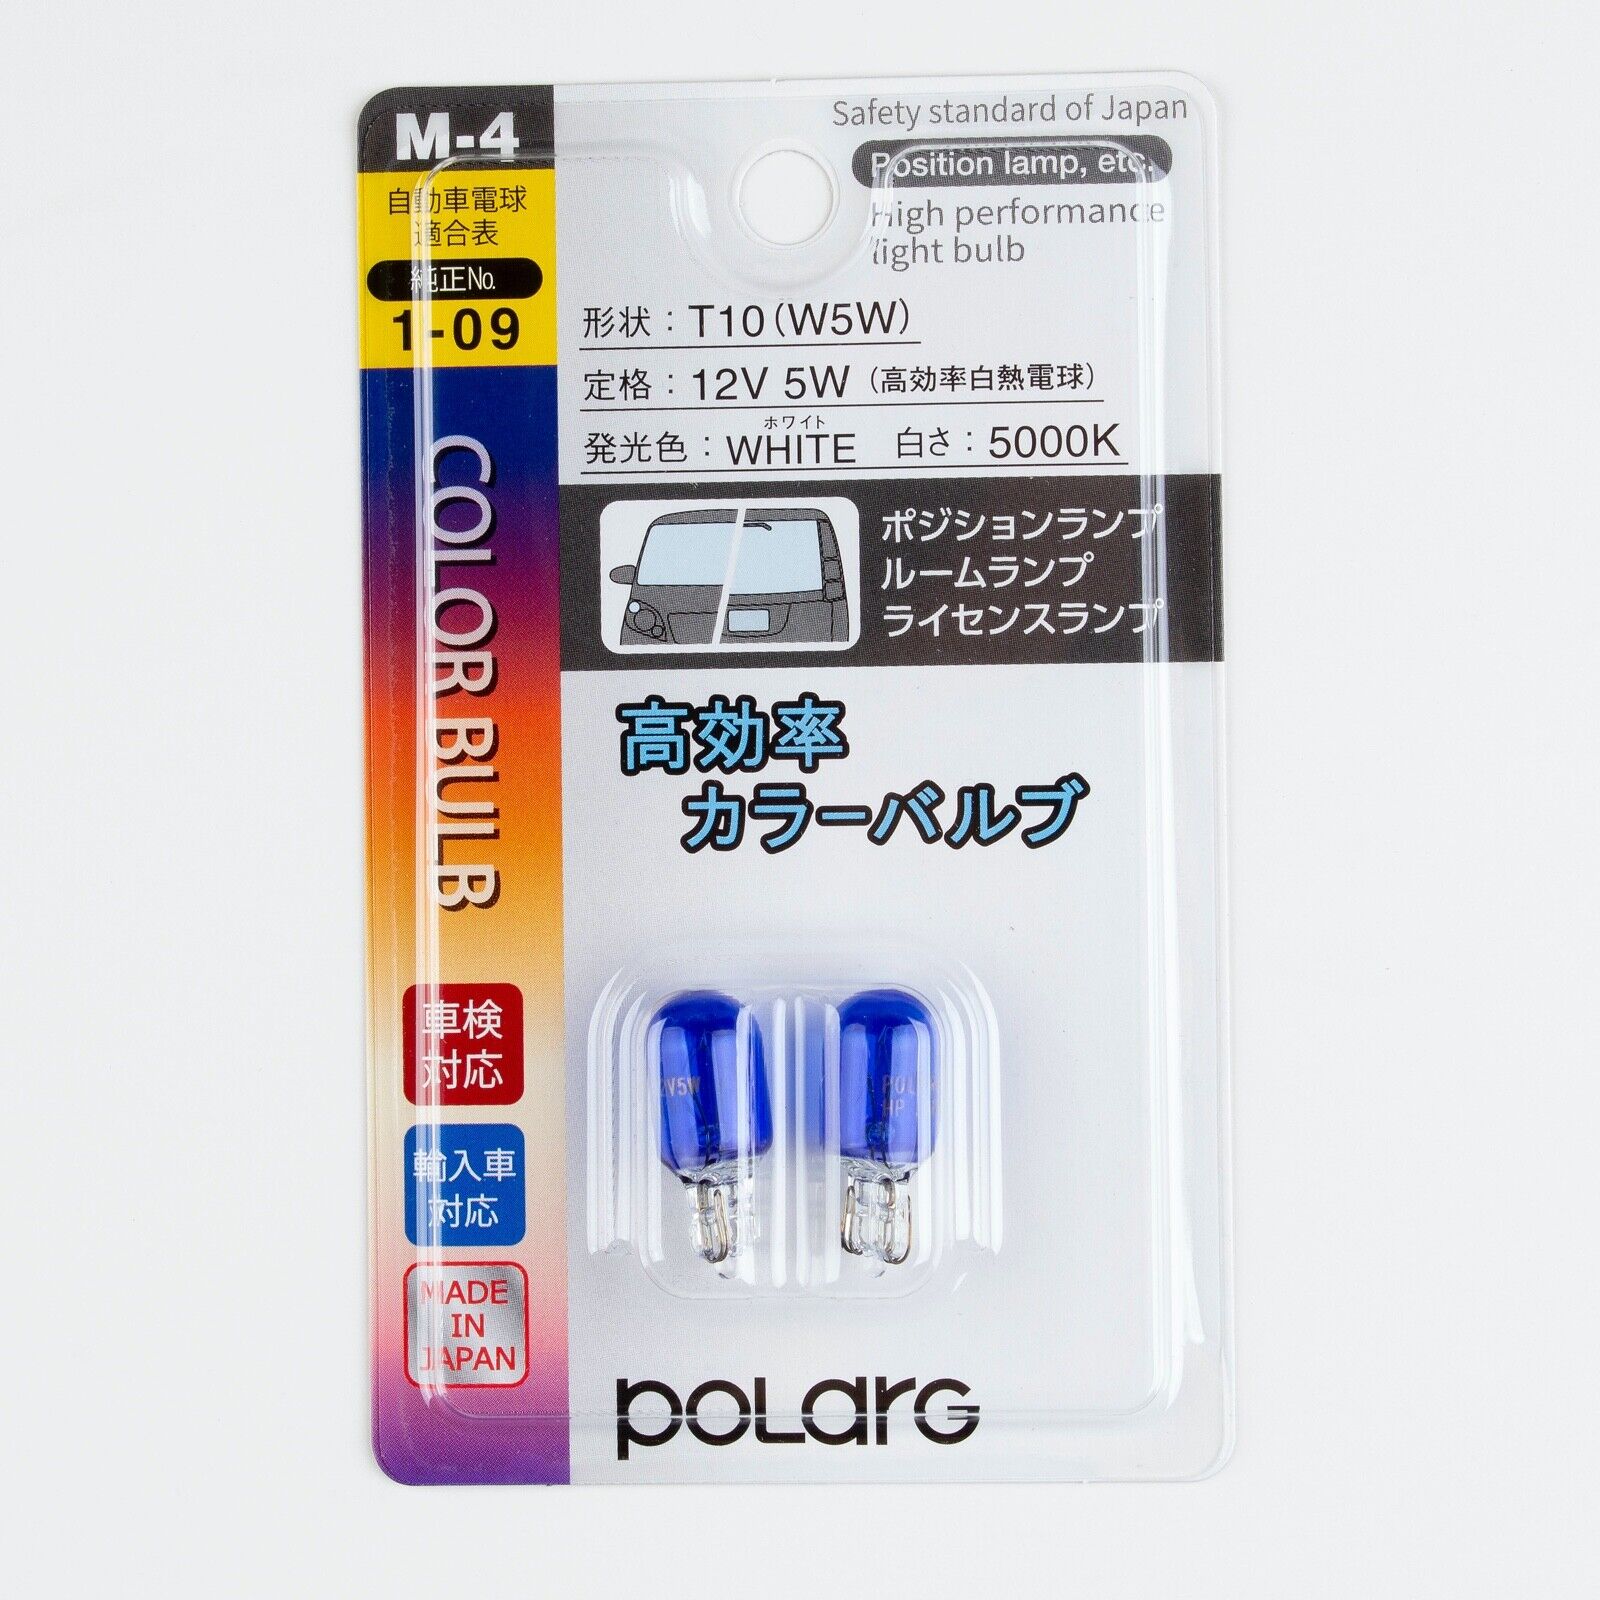 Polarg M-4 Bl Hybrid Hyper White 194 Bulb 12v 5w (pack of 2 bulbs) Made in Japan